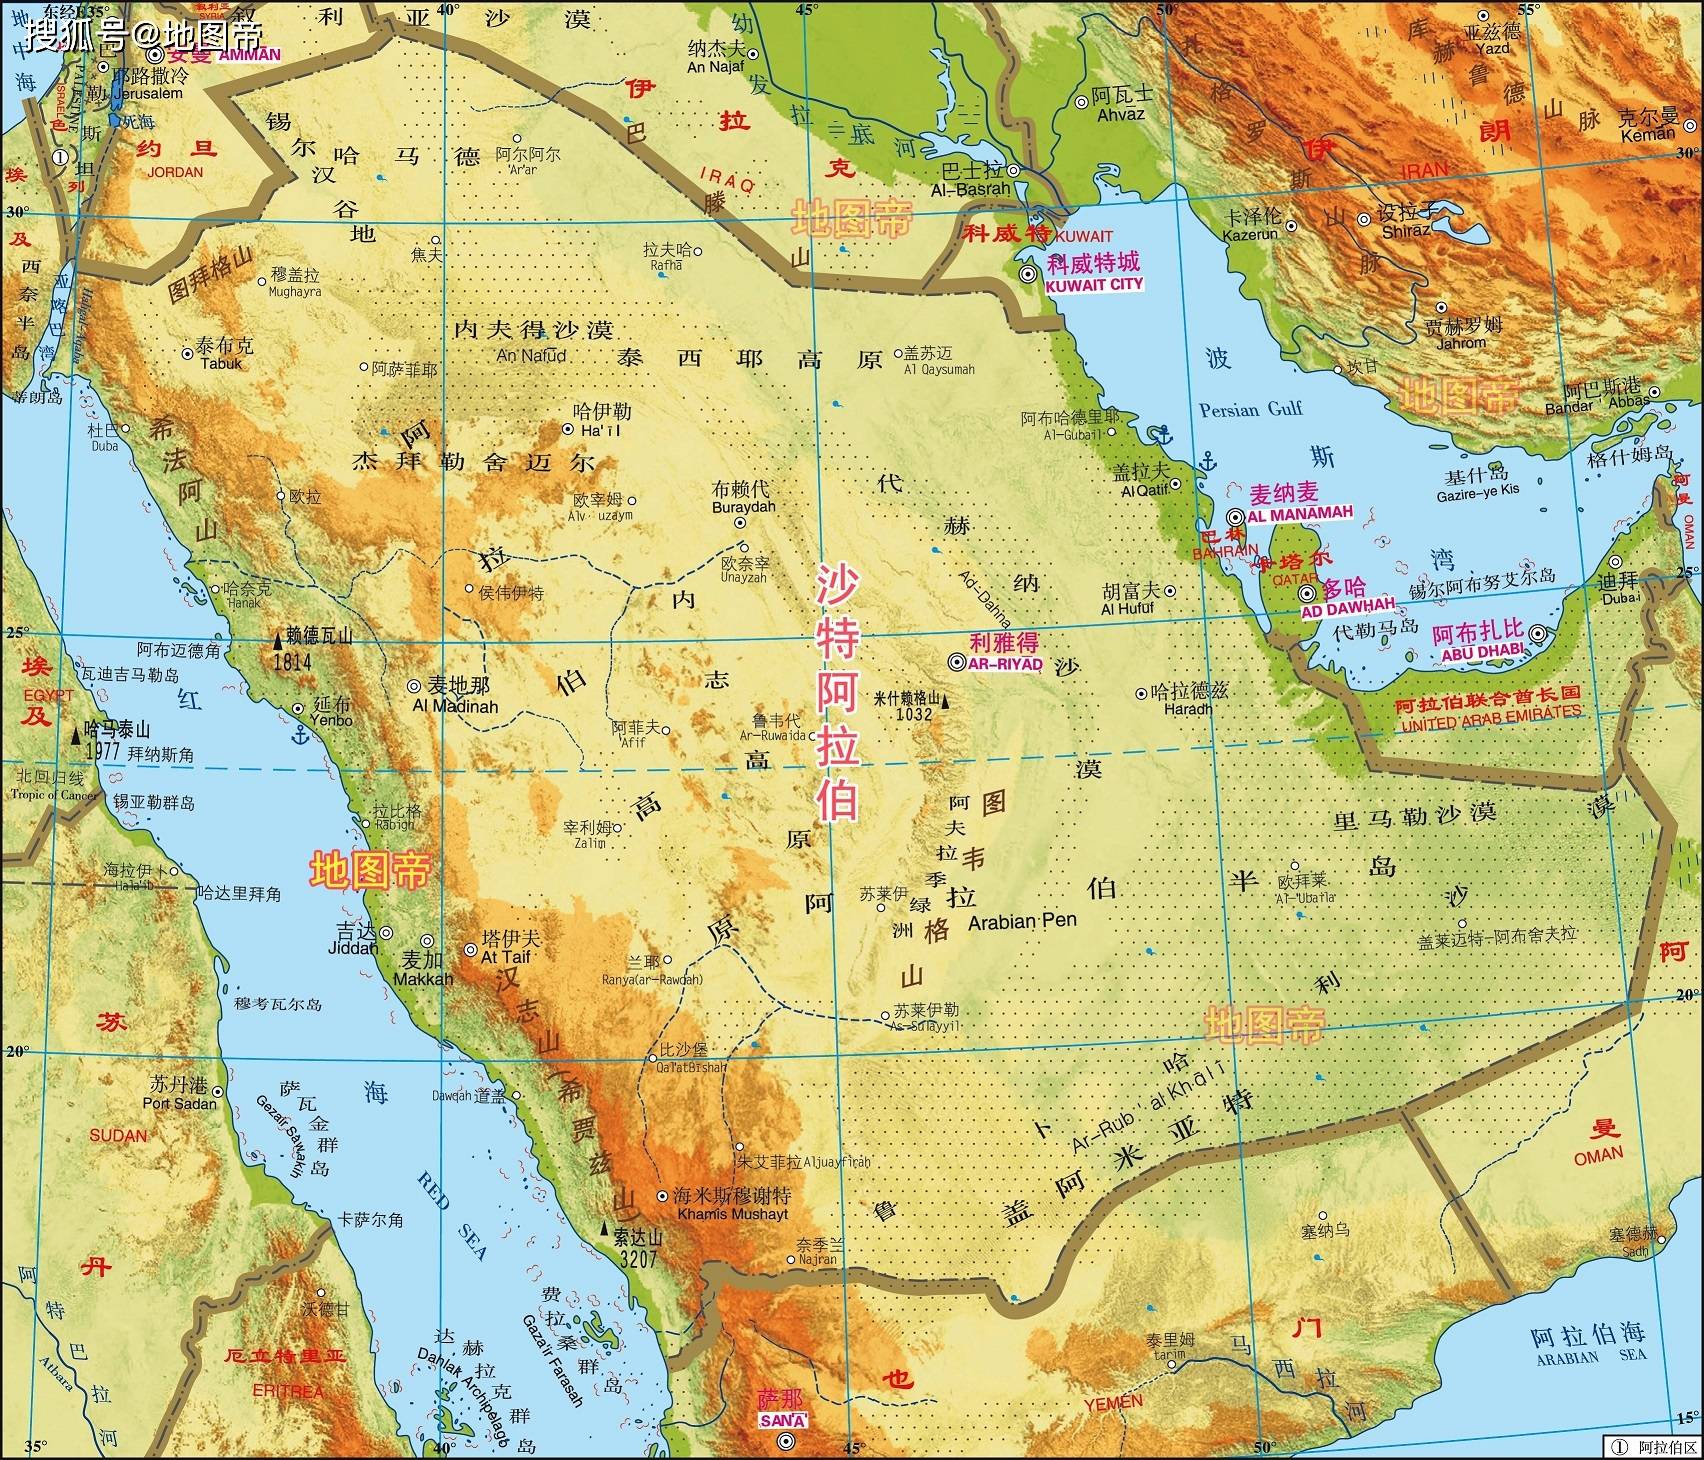 沙特阿拉伯(以下简称沙特),面积约225万平方公里,中东第一面积大国.